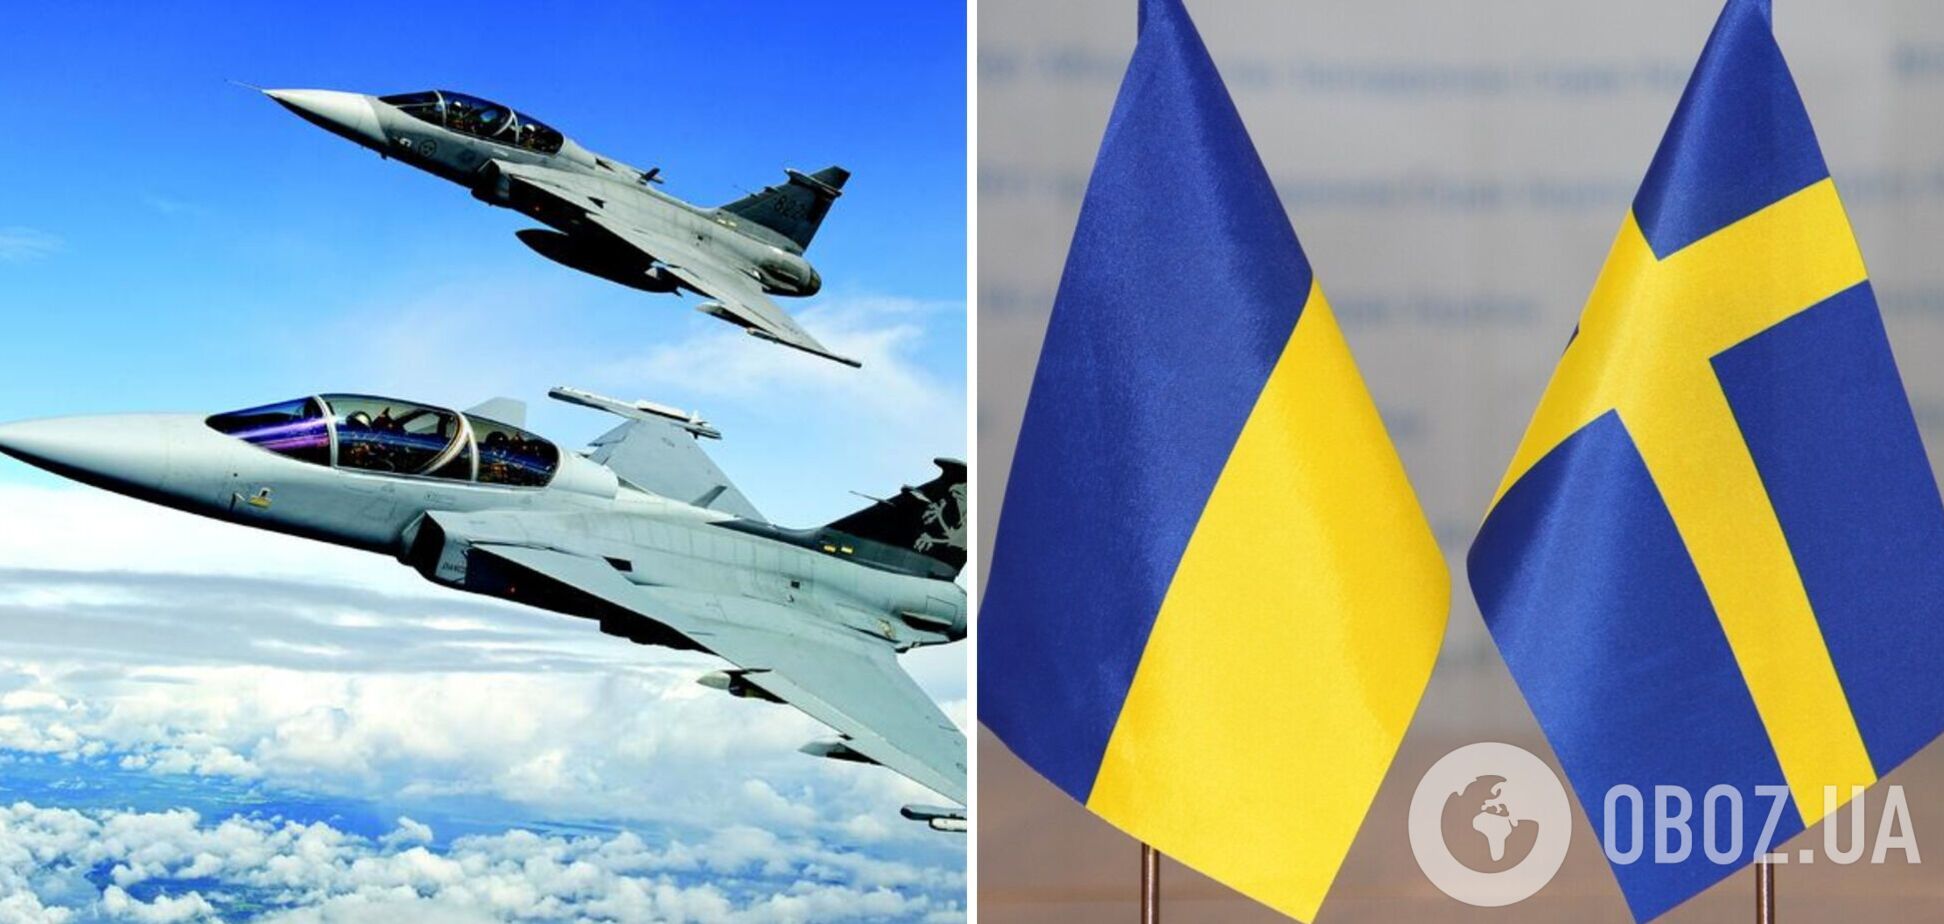 'Мы значительно усиливаем поддержку Украины': в Швеции ответили, могут ли предоставить истребители Gripen, и назвали приоритеты в помощи